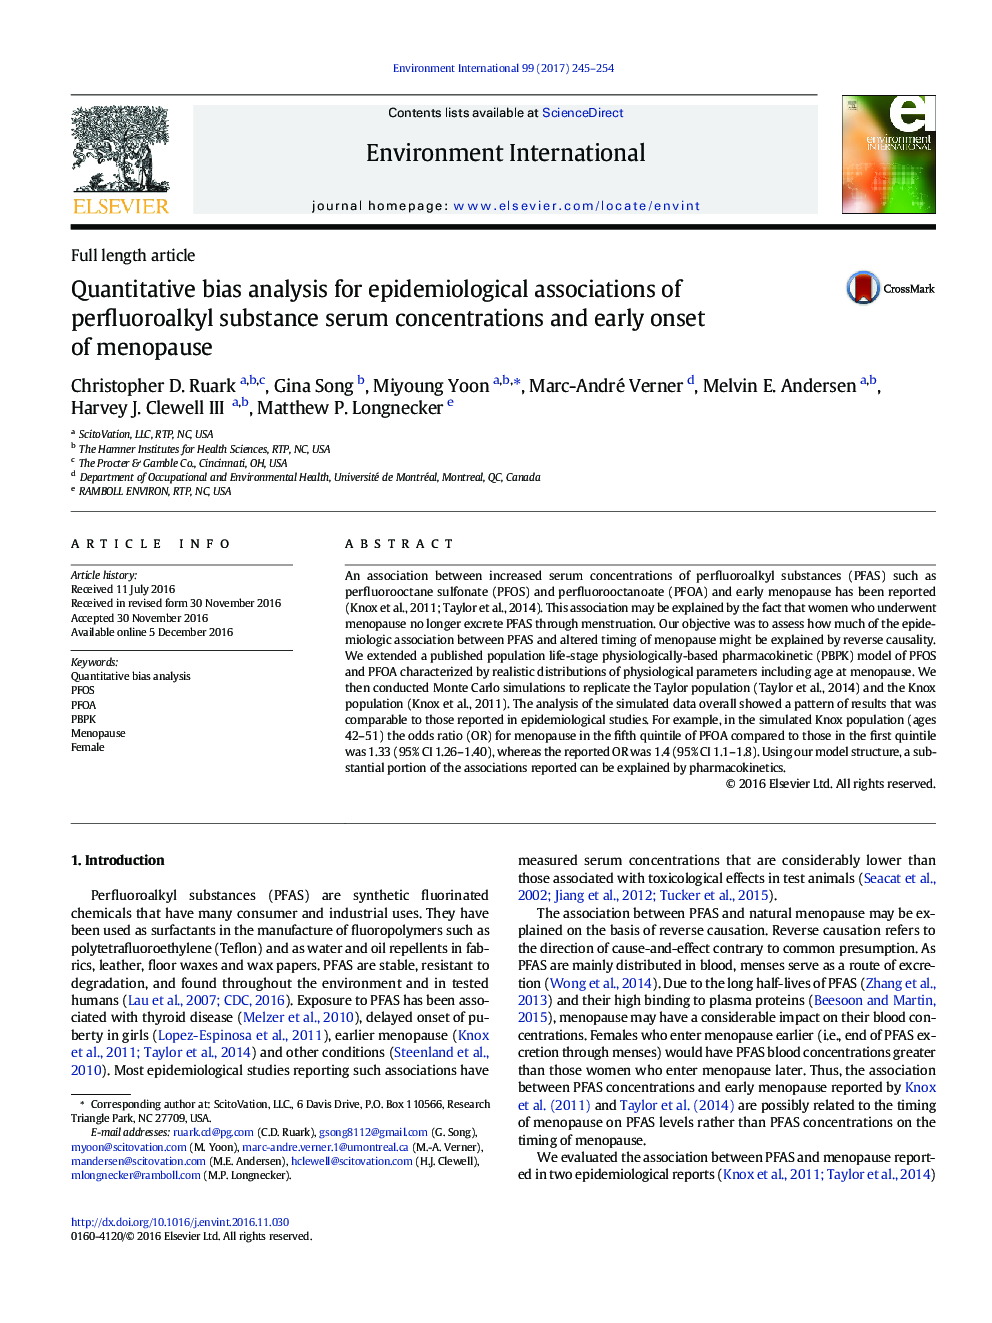 مقاله کامل مقاله مقیاس تحلیلی تعادلی برای ترکیبات اپیدمیولوژیک غلظت سرمی پروپرولوآلکول و شروع زودرس یائسگی 